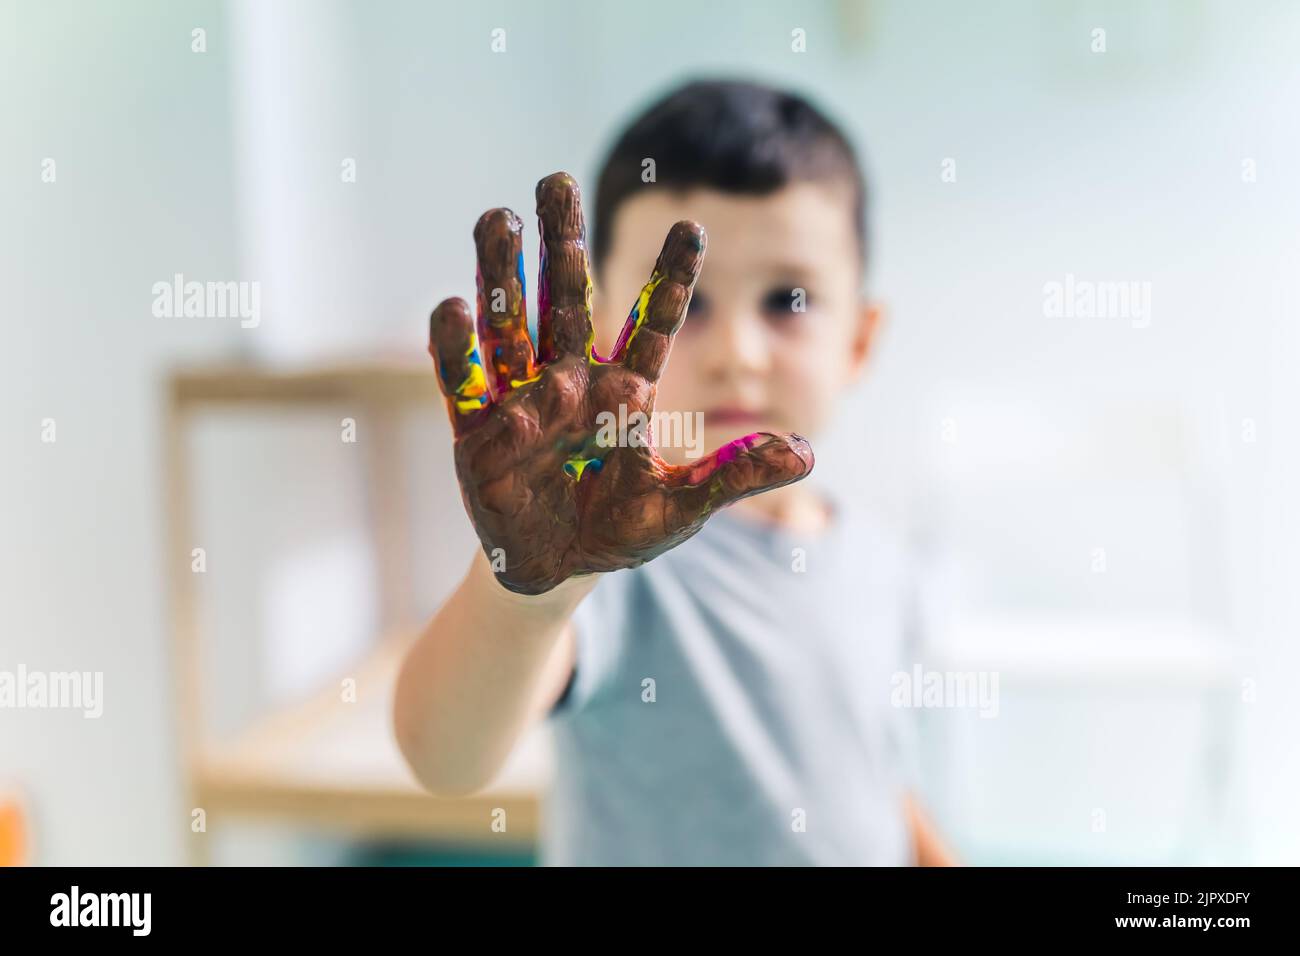 Kleinkind Junge zeigt seine bunte Handfläche mit waschbaren und ungiftigen Farben bemalt nach einem Kunstspiel im Kindergarten. Fingermalerei für Kinder sensorische Fähigkeiten, Kreativität und Vorstellungskraft Entwicklung. Hochwertige Fotos Stockfoto